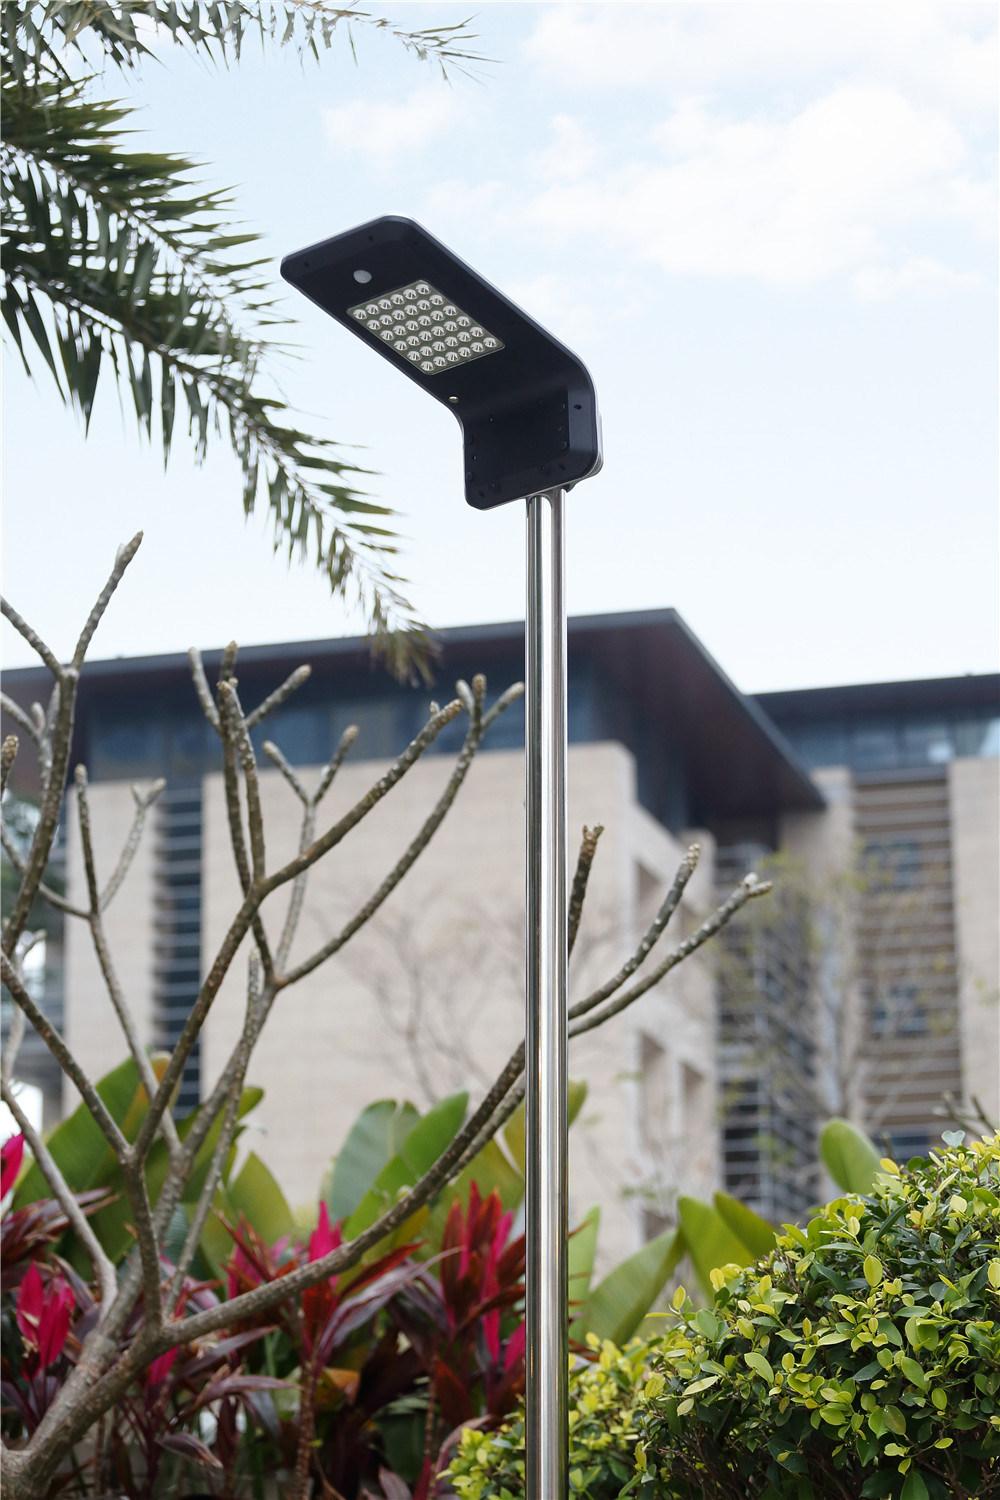 High Brightness LED IP65 Smart Bajaj Street Light Solar Street Light for Outdoor